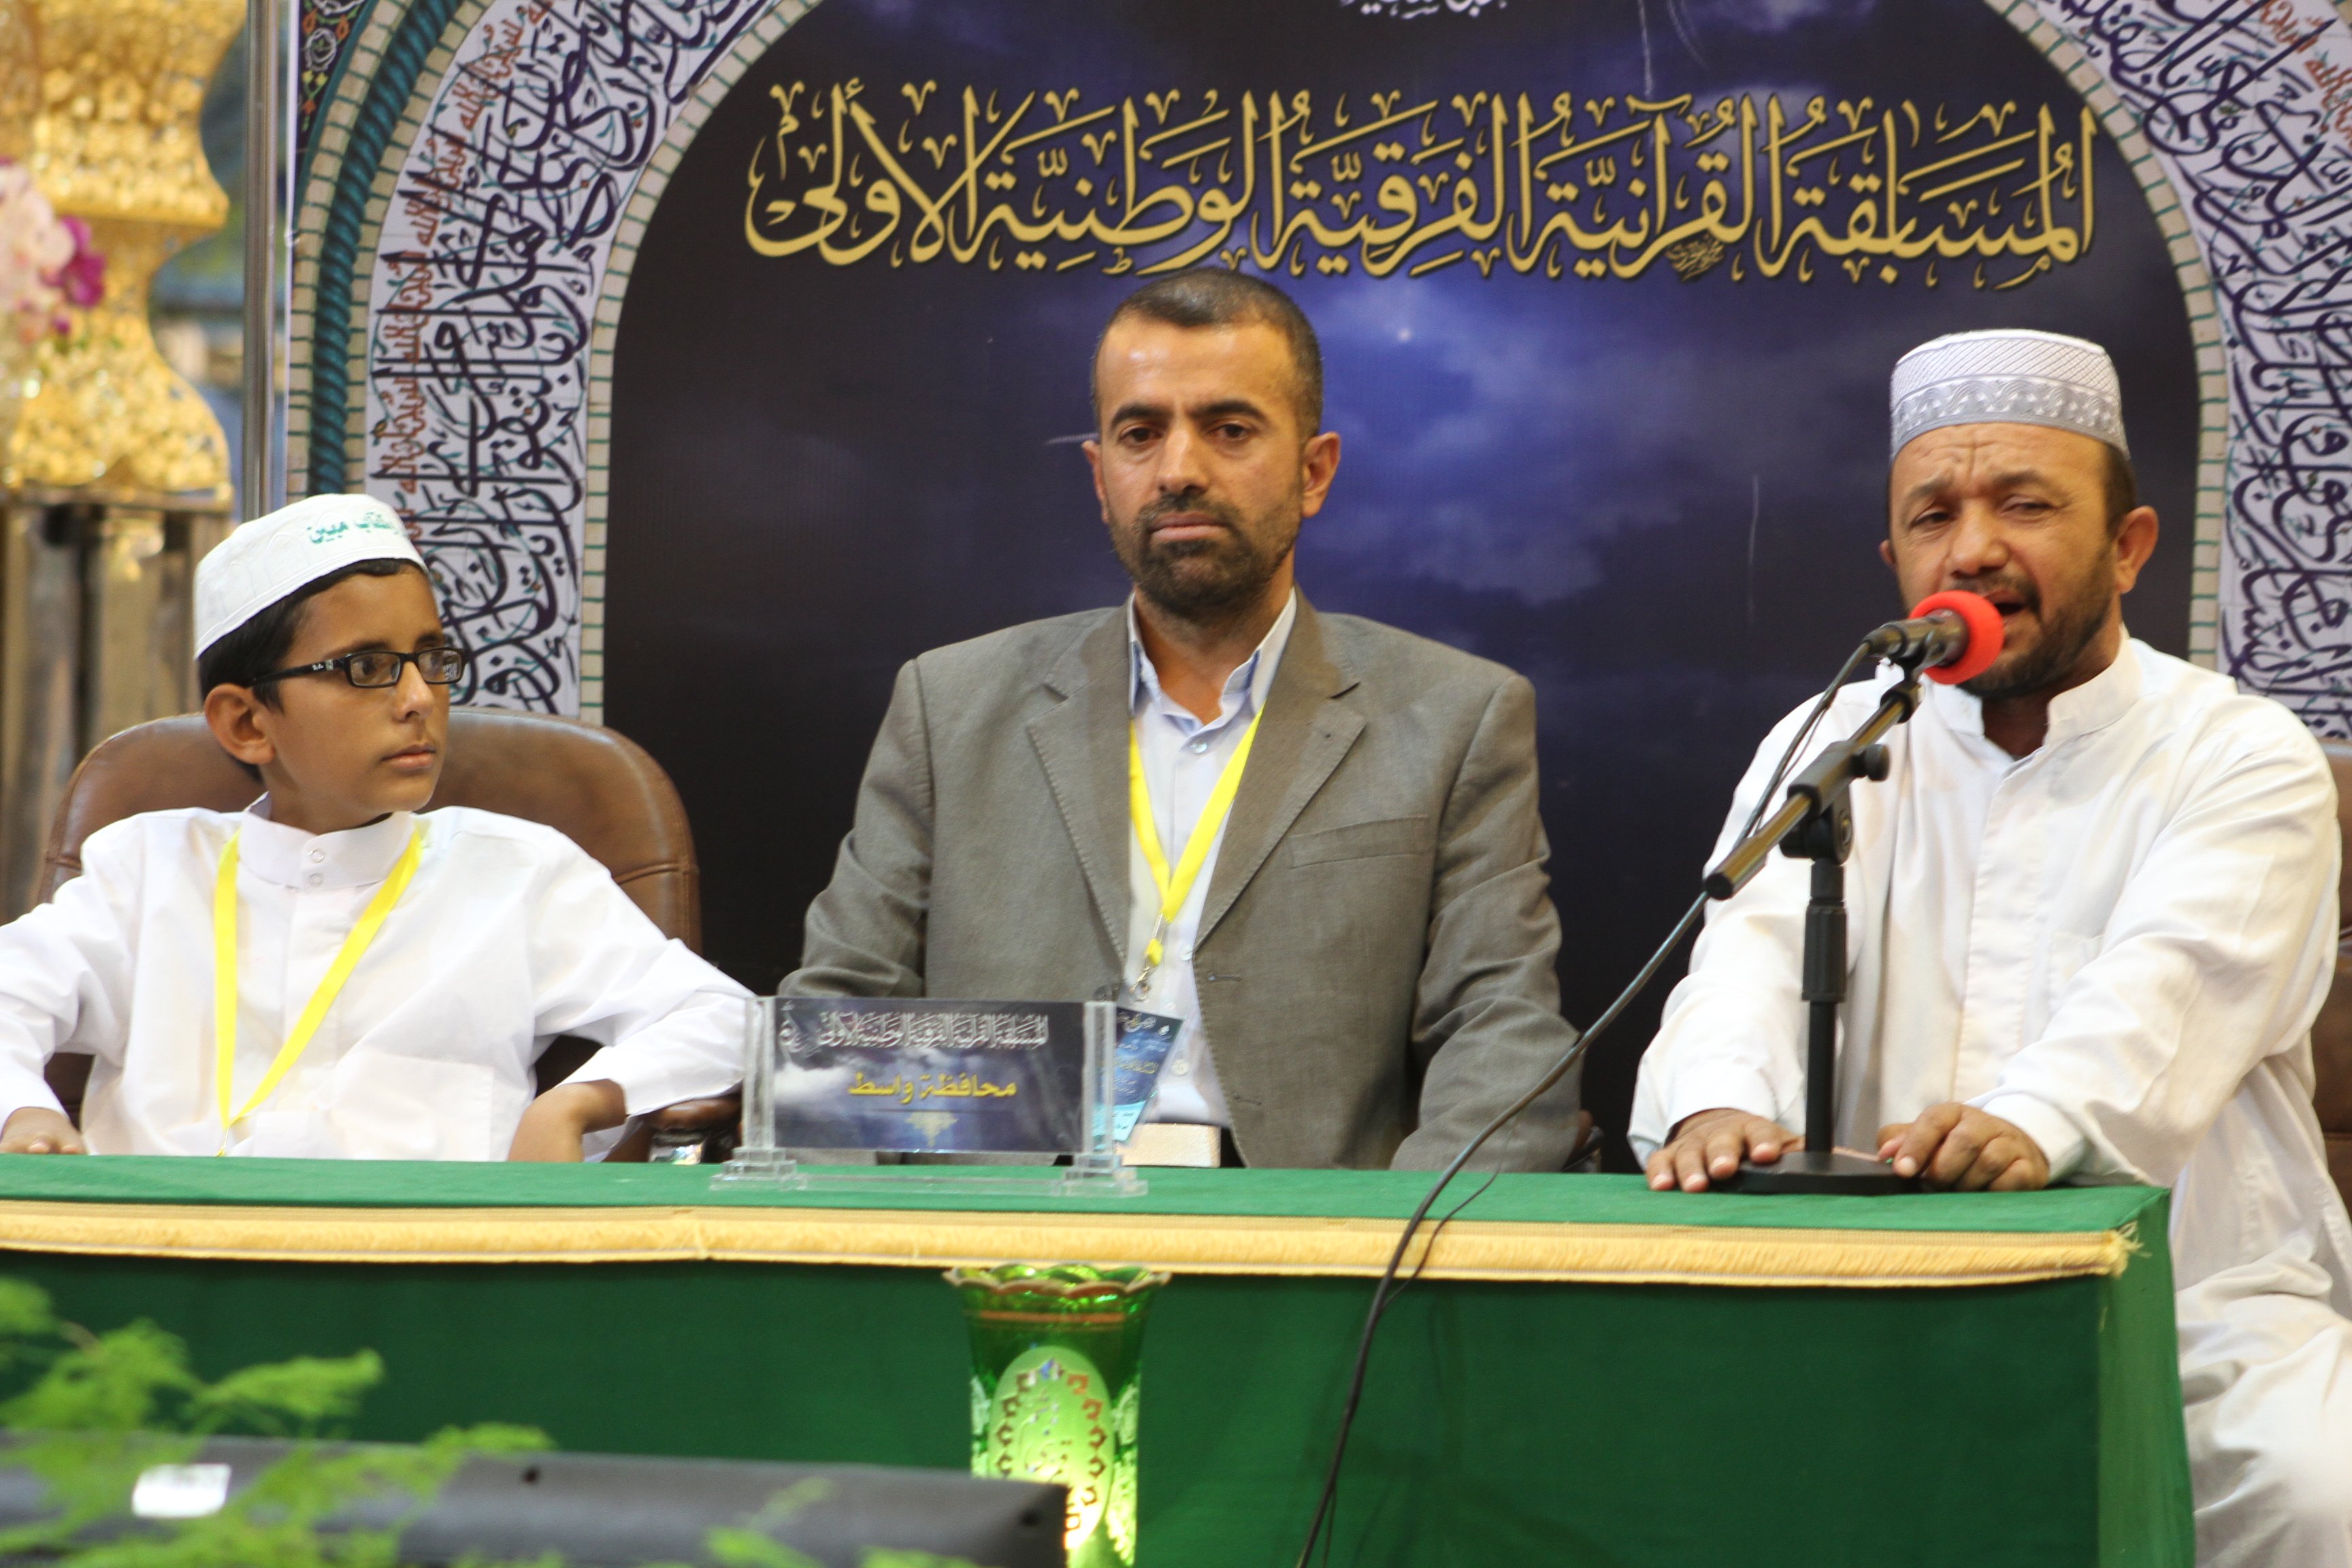 نتائج المرحلة الأولى من المسابقة القرآنية الفرقية الوطنية الأولى